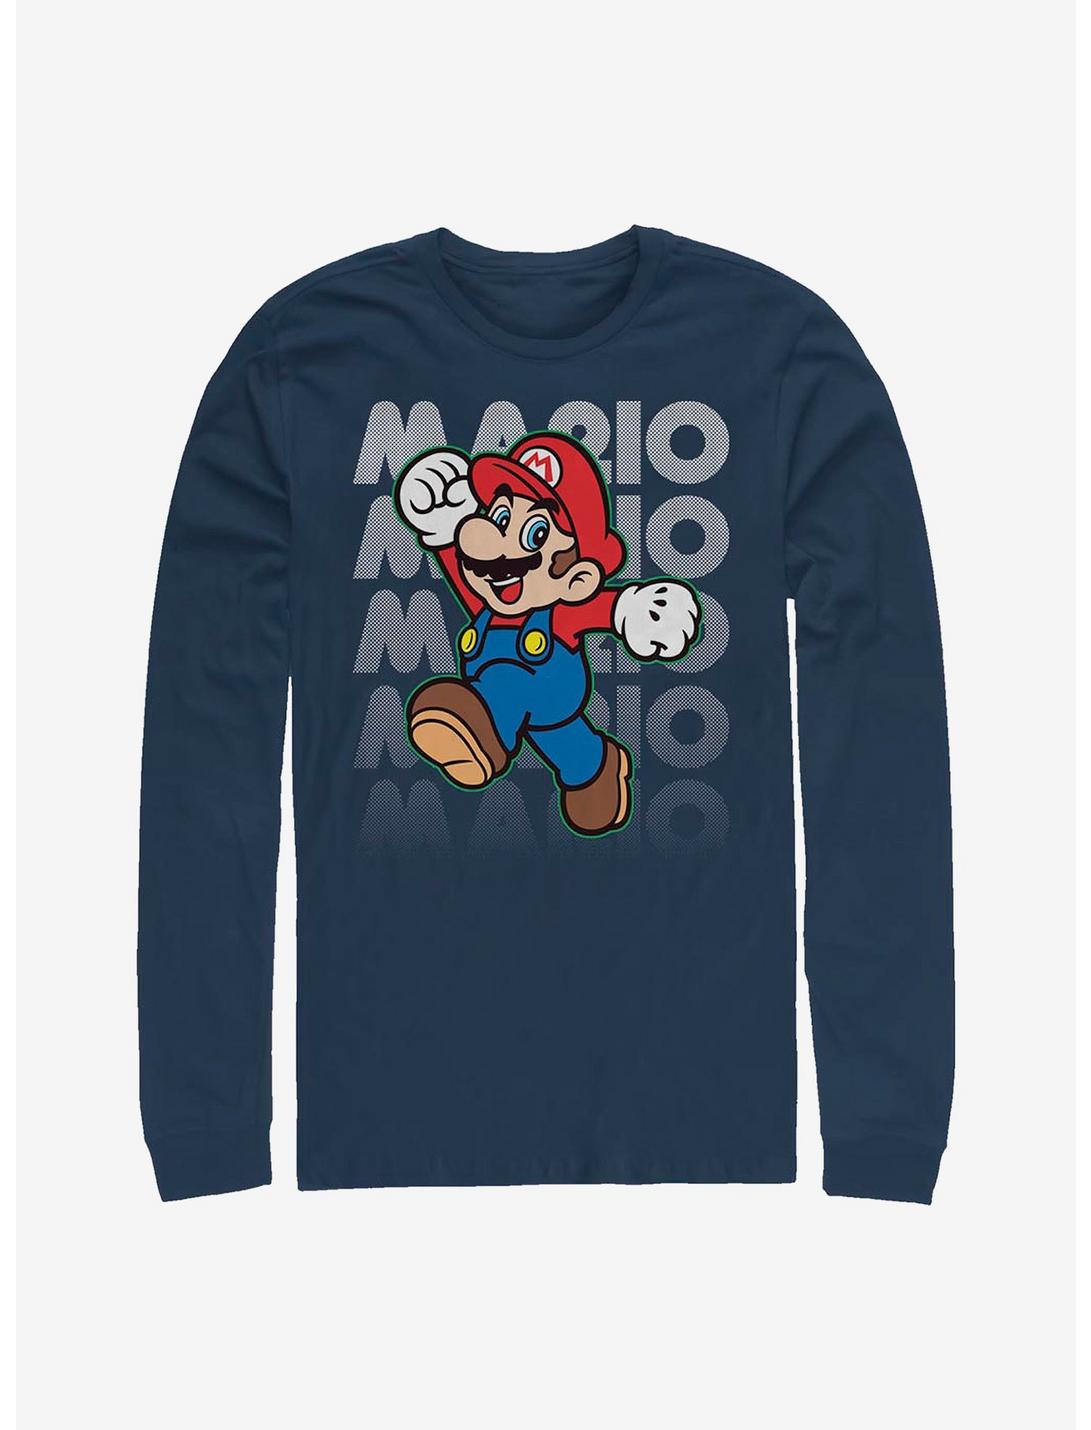 Super Mario Stacked Name Long-Sleeve T-Shirt, NAVY, hi-res